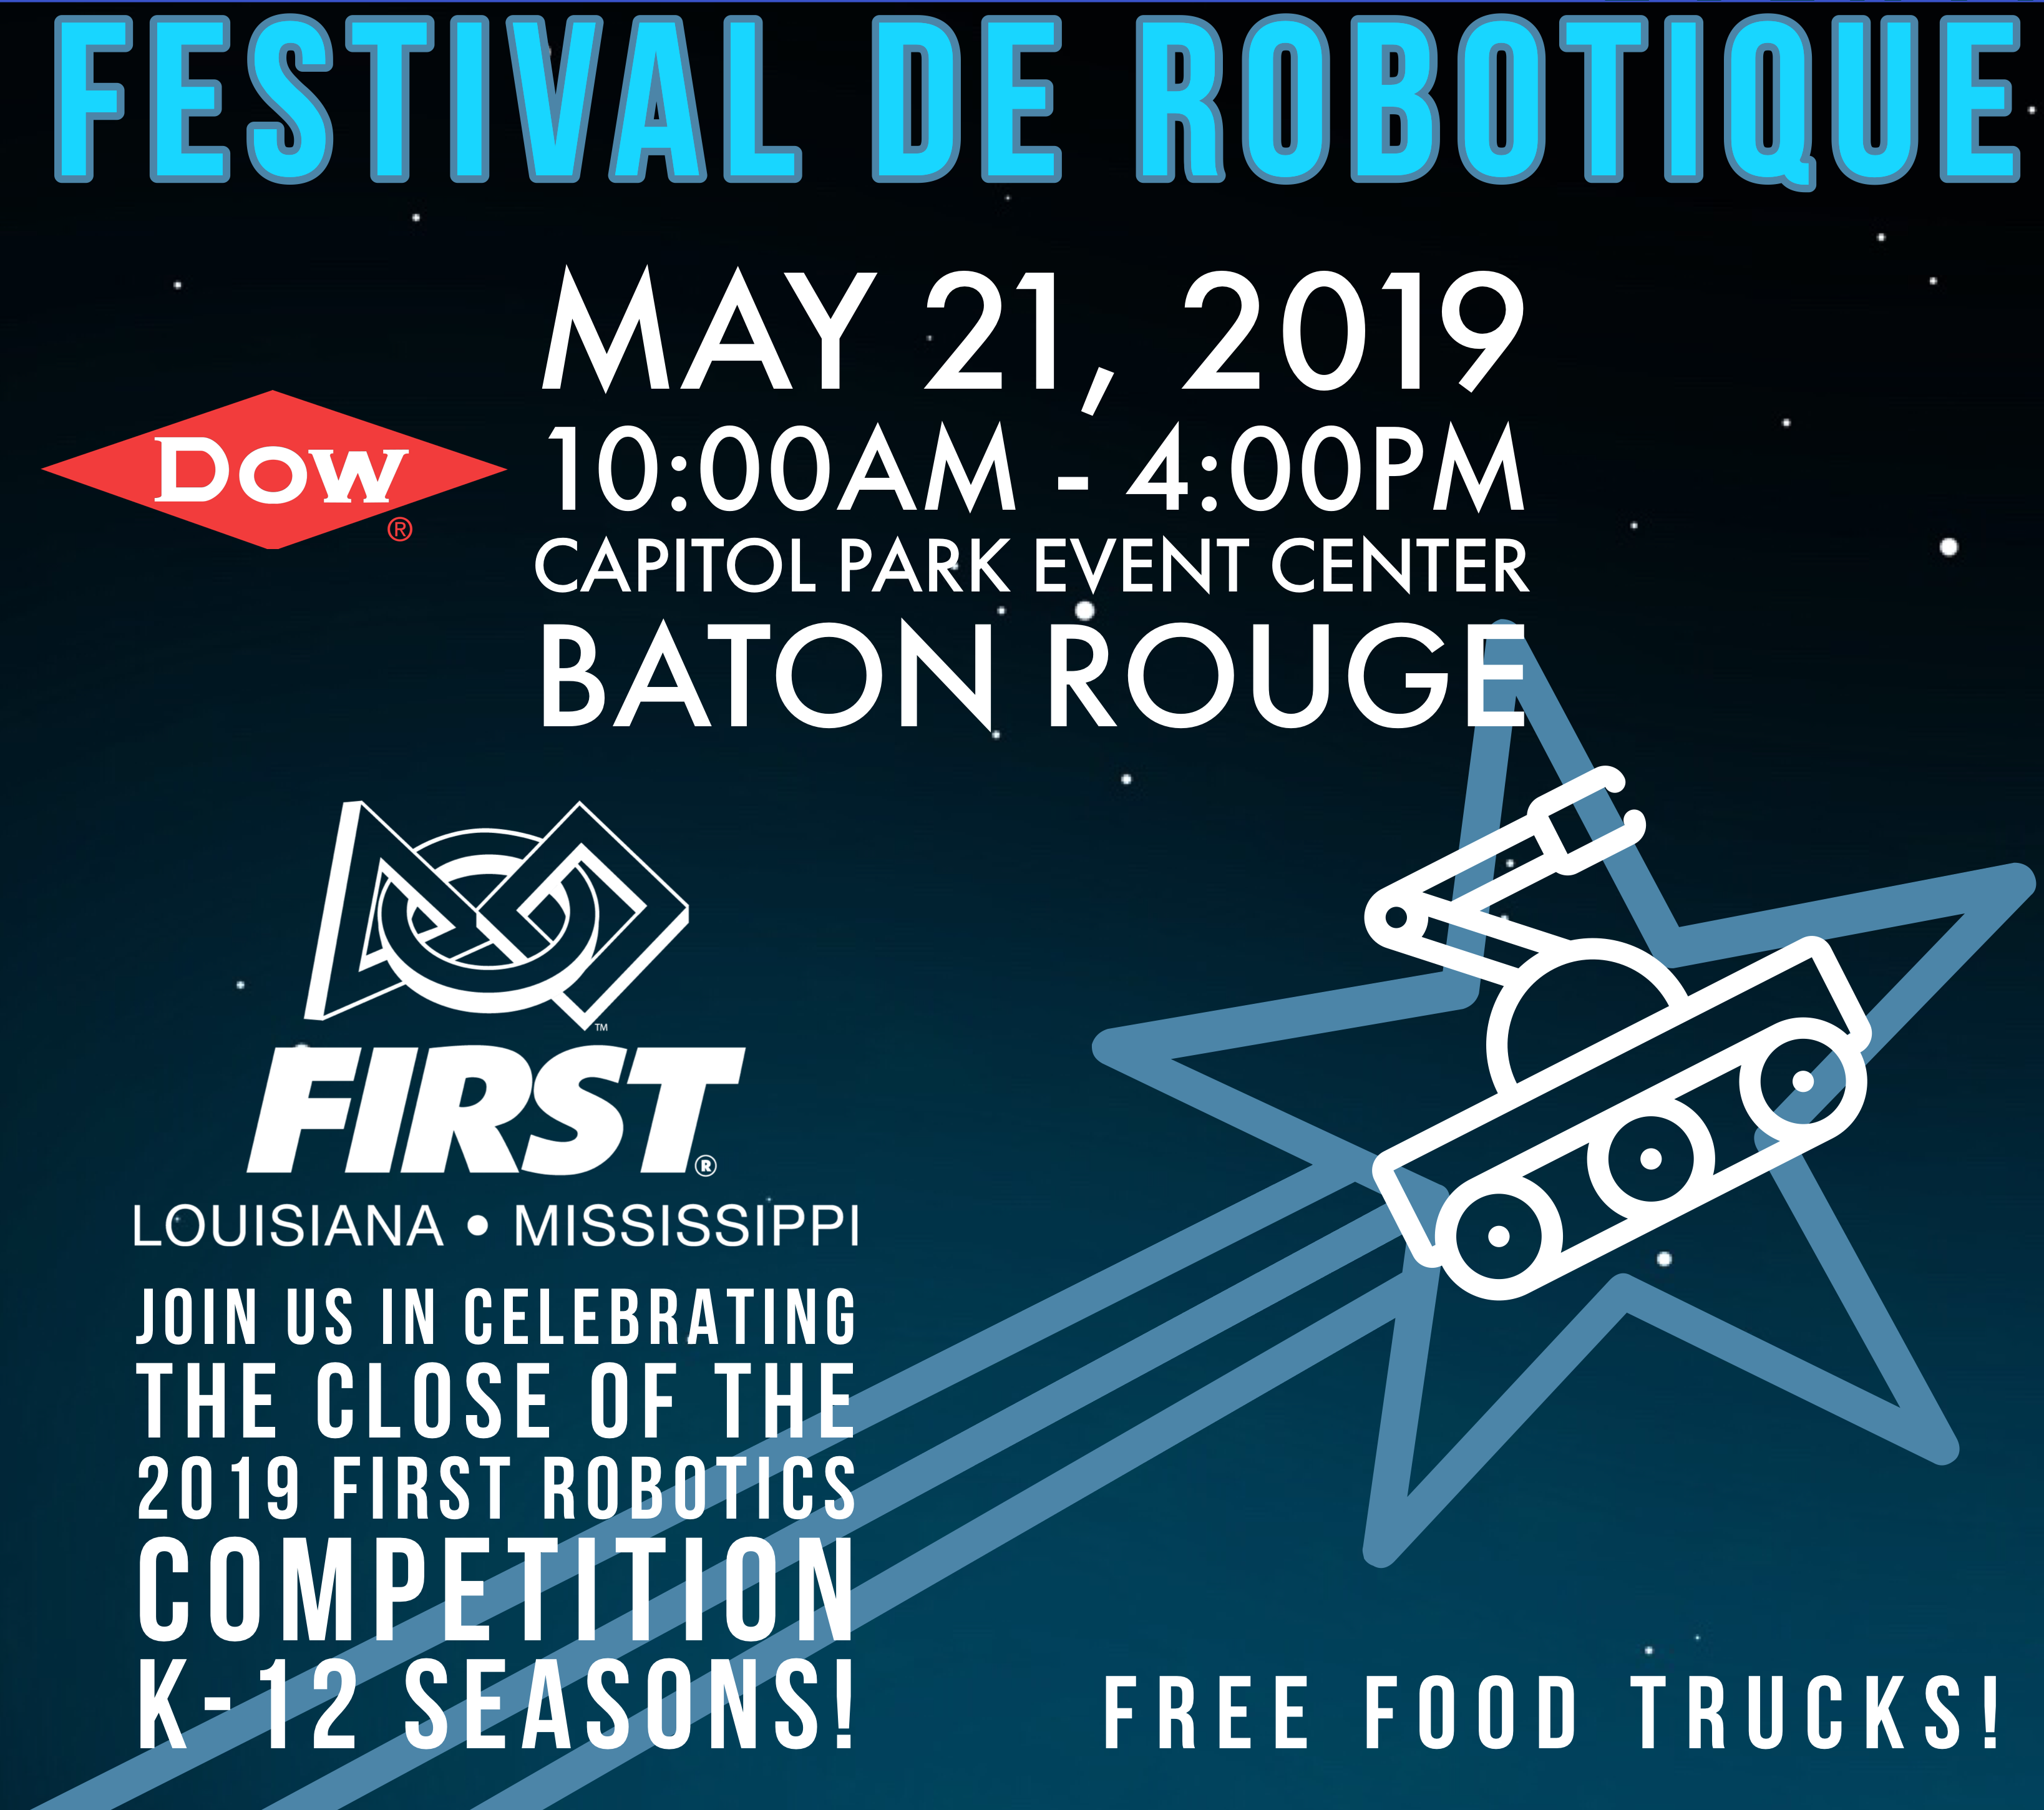 3rd Annual Festival de Robotique